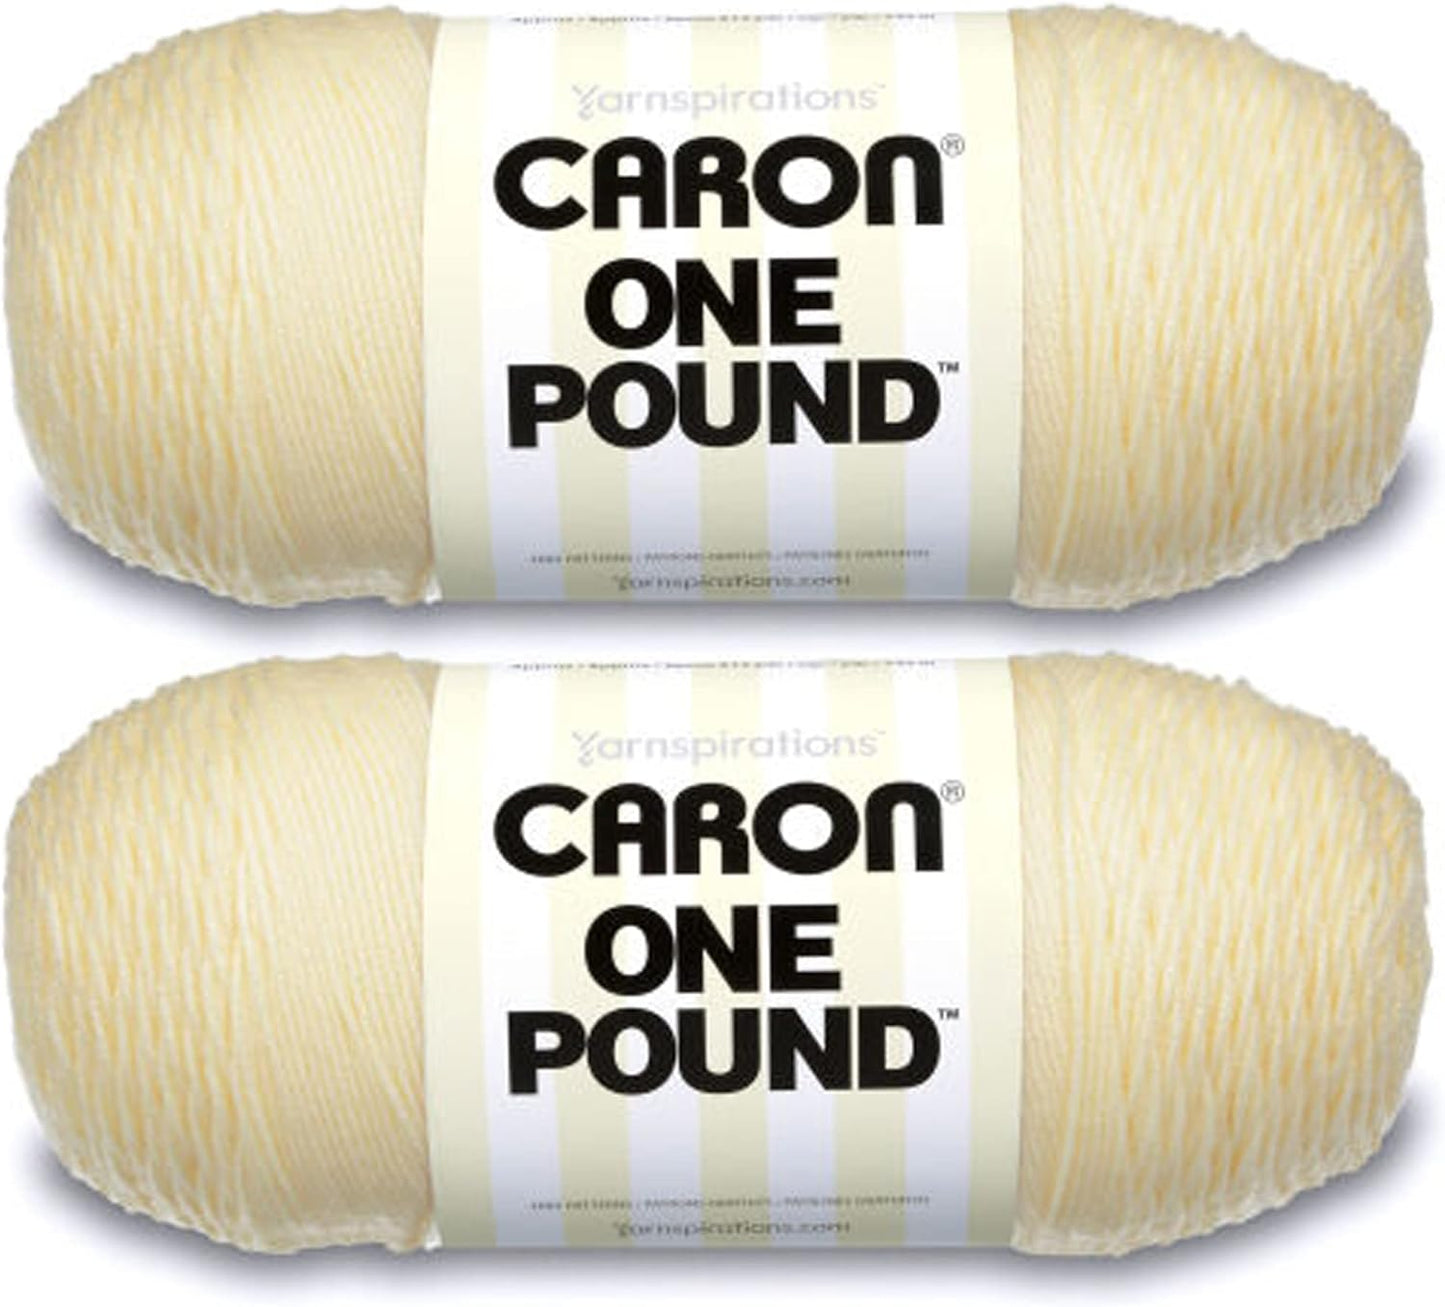 One Pound White Yarn - 2 Pack of 454G/16Oz - Acrylic - 4 Medium (Worsted) - 812 Yards - Knitting/Crochet